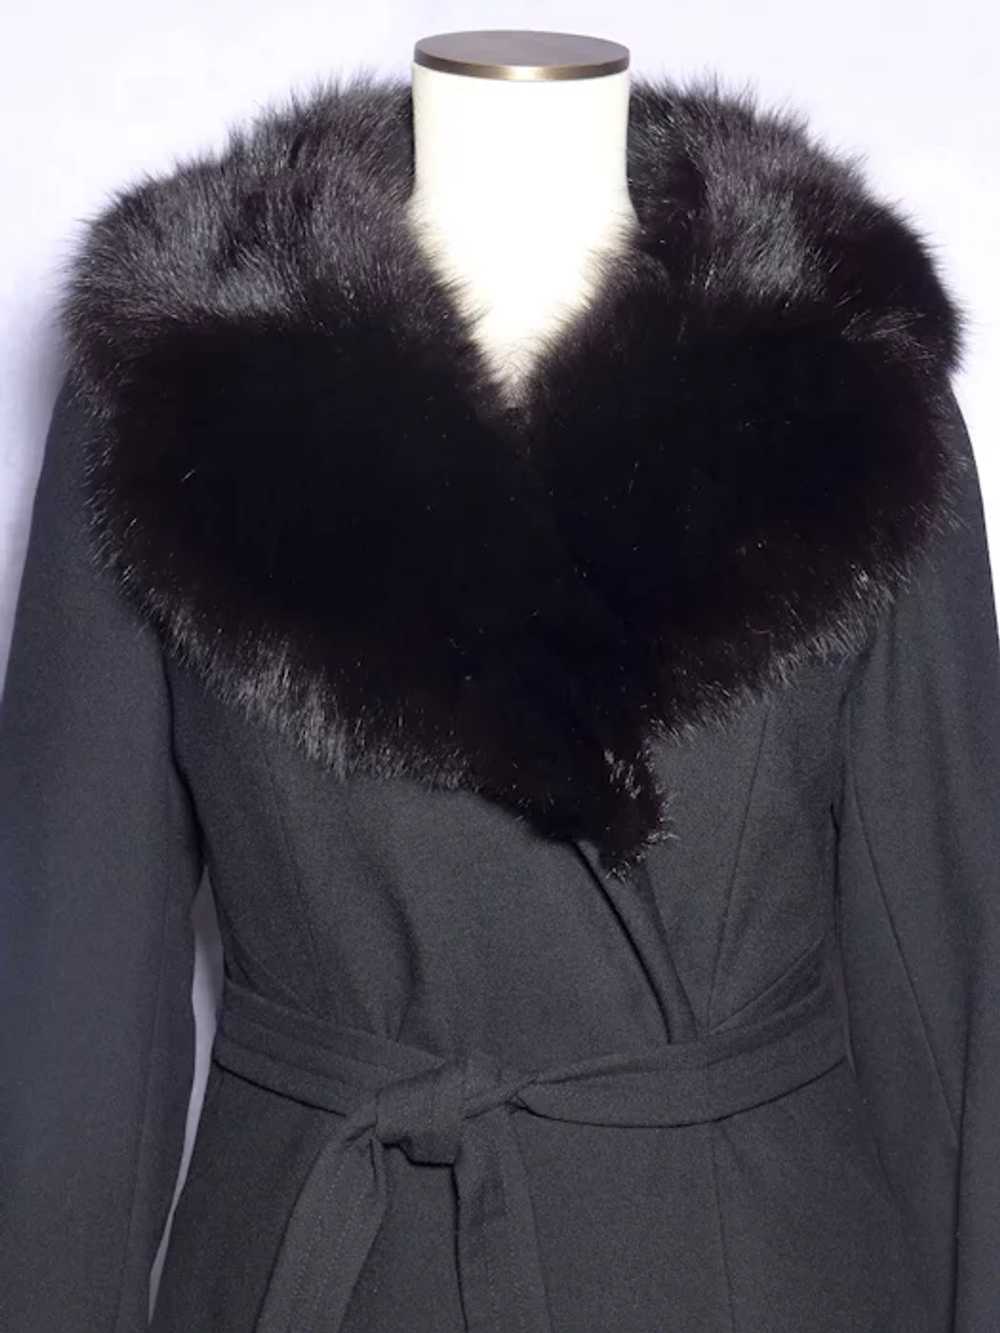 Vintage 1970s Lorendale Black Wool Coat Black Fox… - image 5